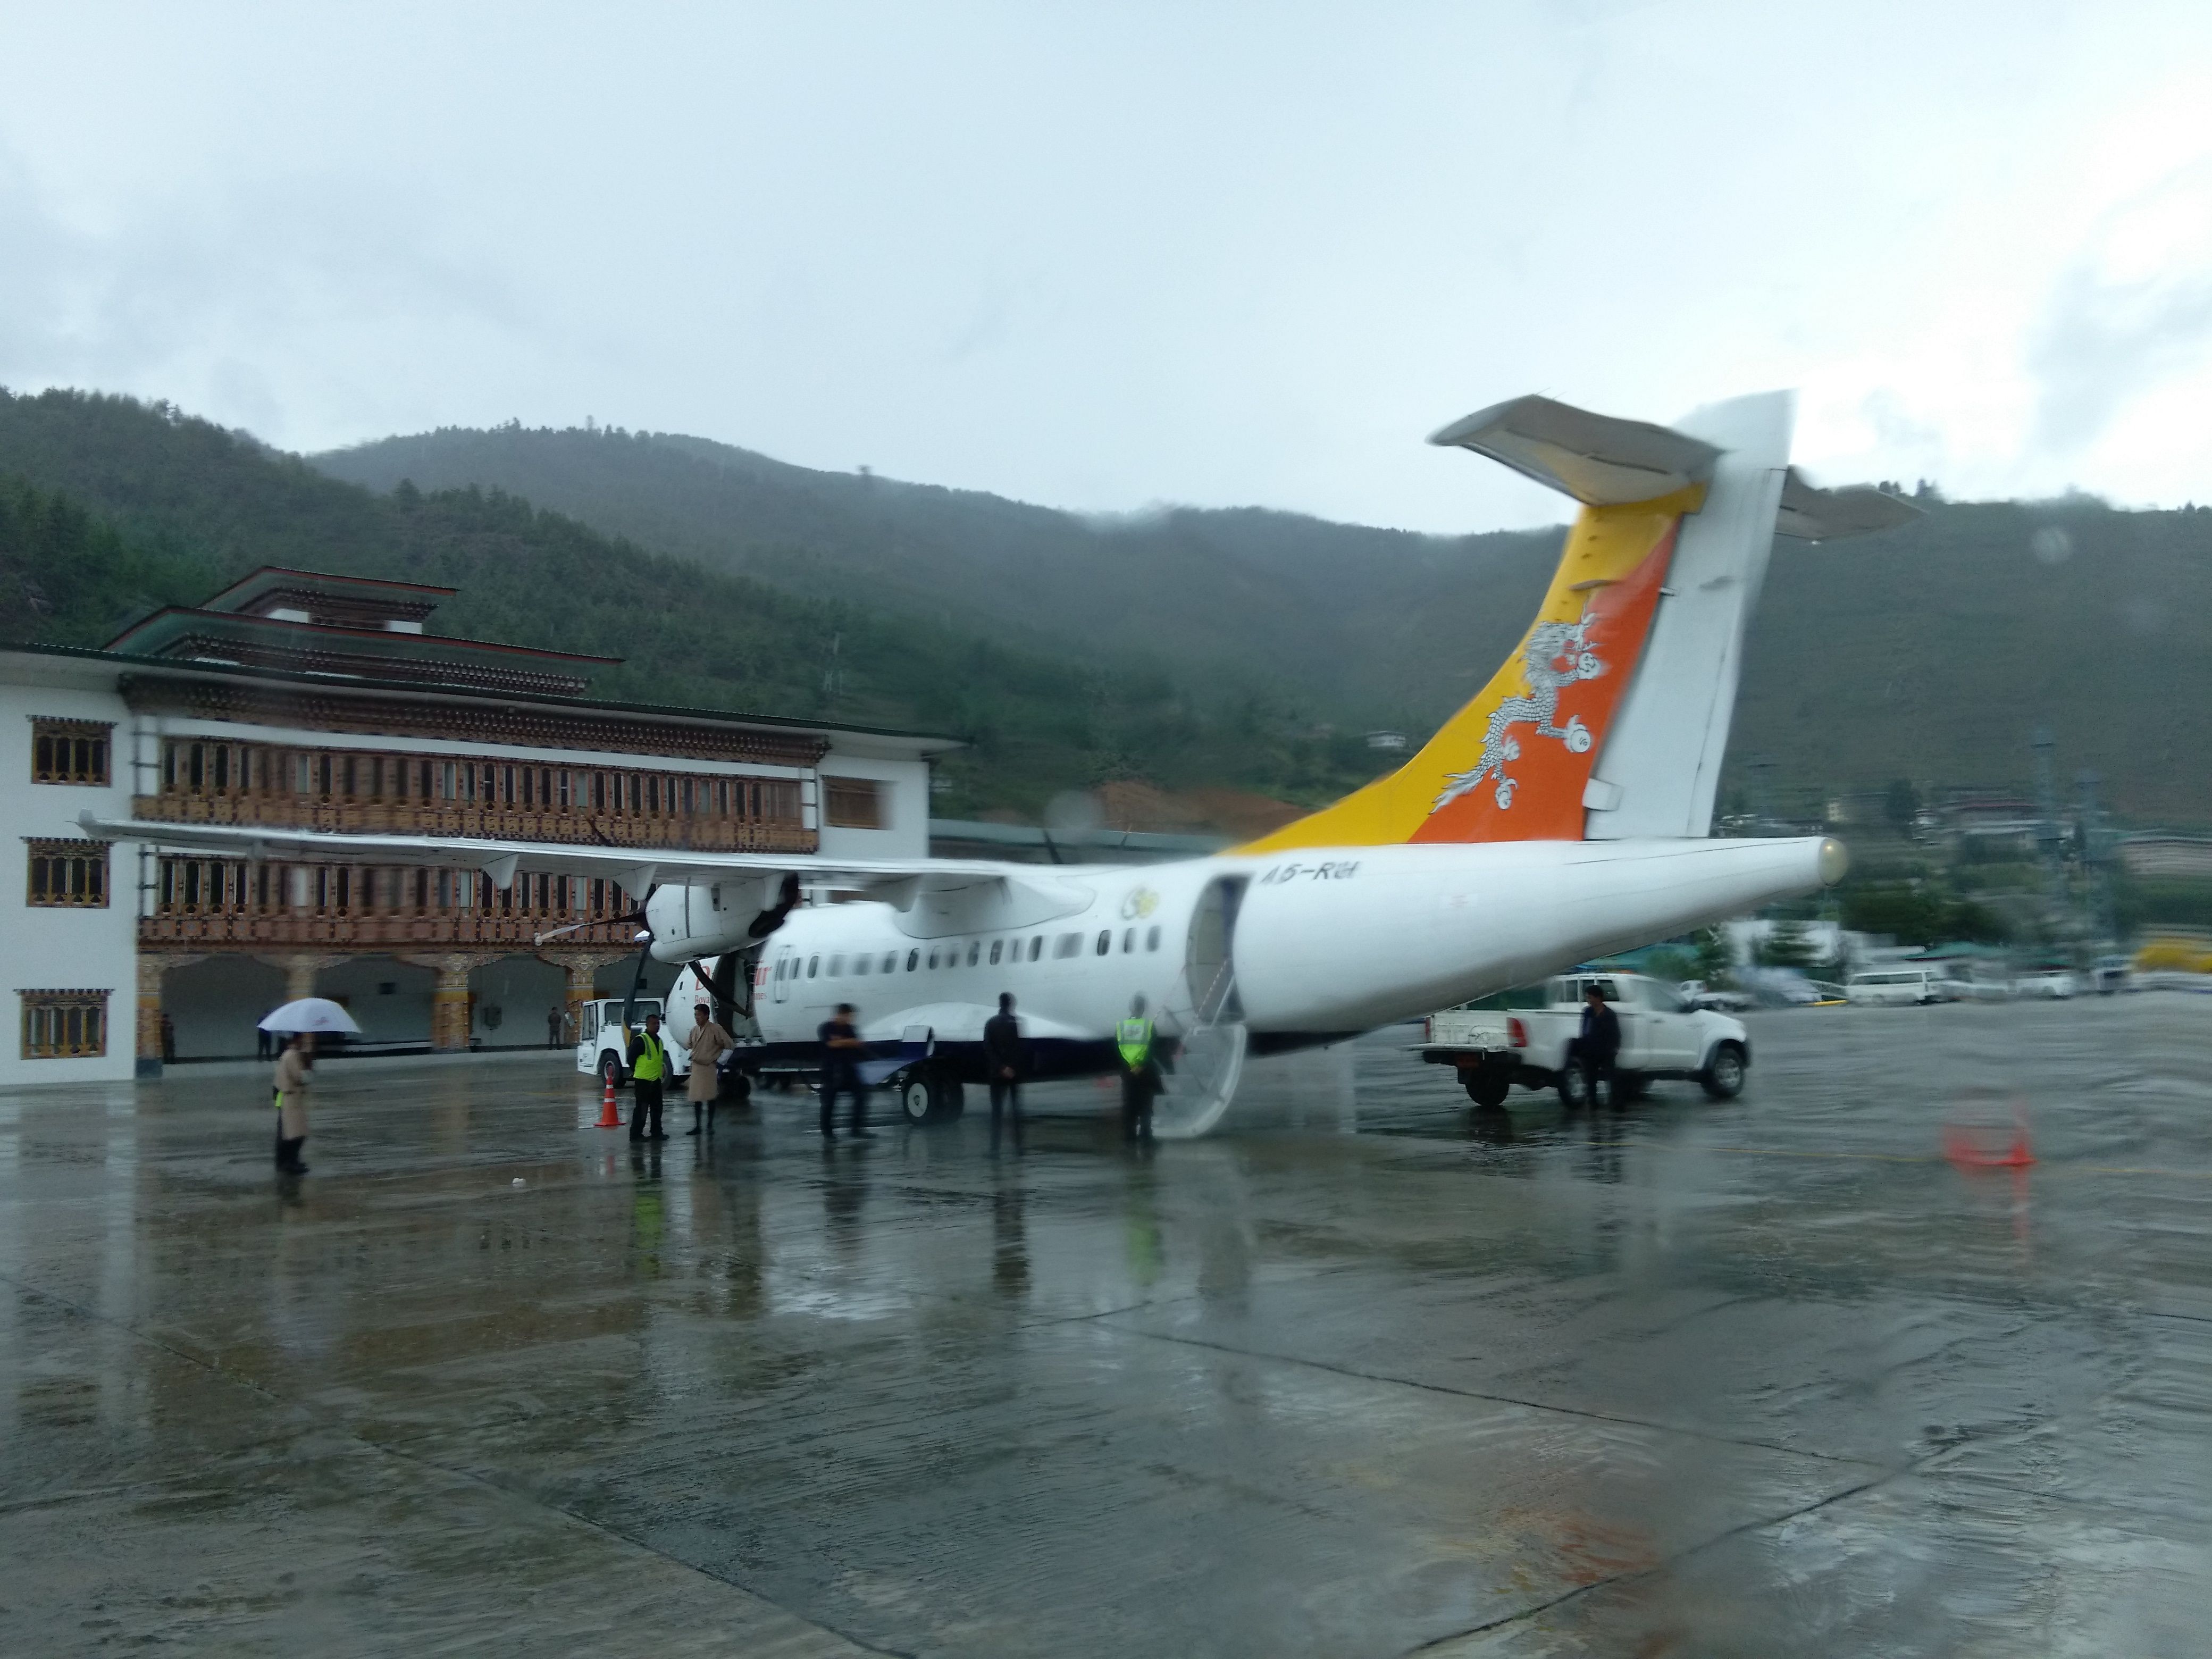 Аэропорт бутана. Бутан Тхимпху аэропорт. Аэропорт паро в бутане. Аэропорт паро в королевстве бутан. Аэропорт паро в бутане, Гималаи.